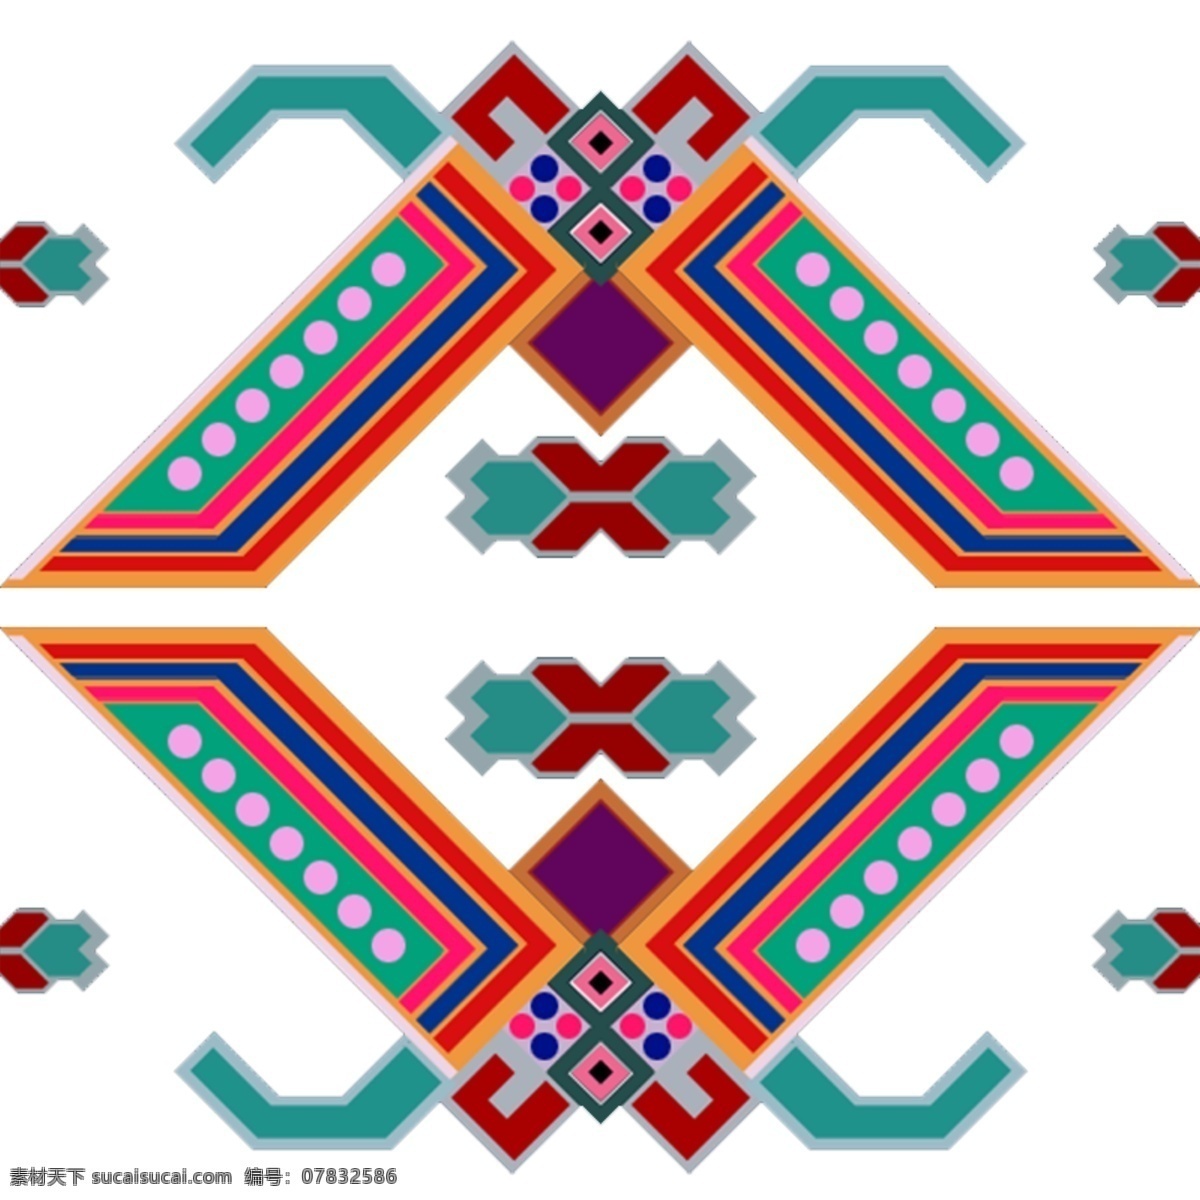 西兰卡普贴图 西兰卡普 贴图素材 花纹 传统元素 土家族 文化艺术 传统文化